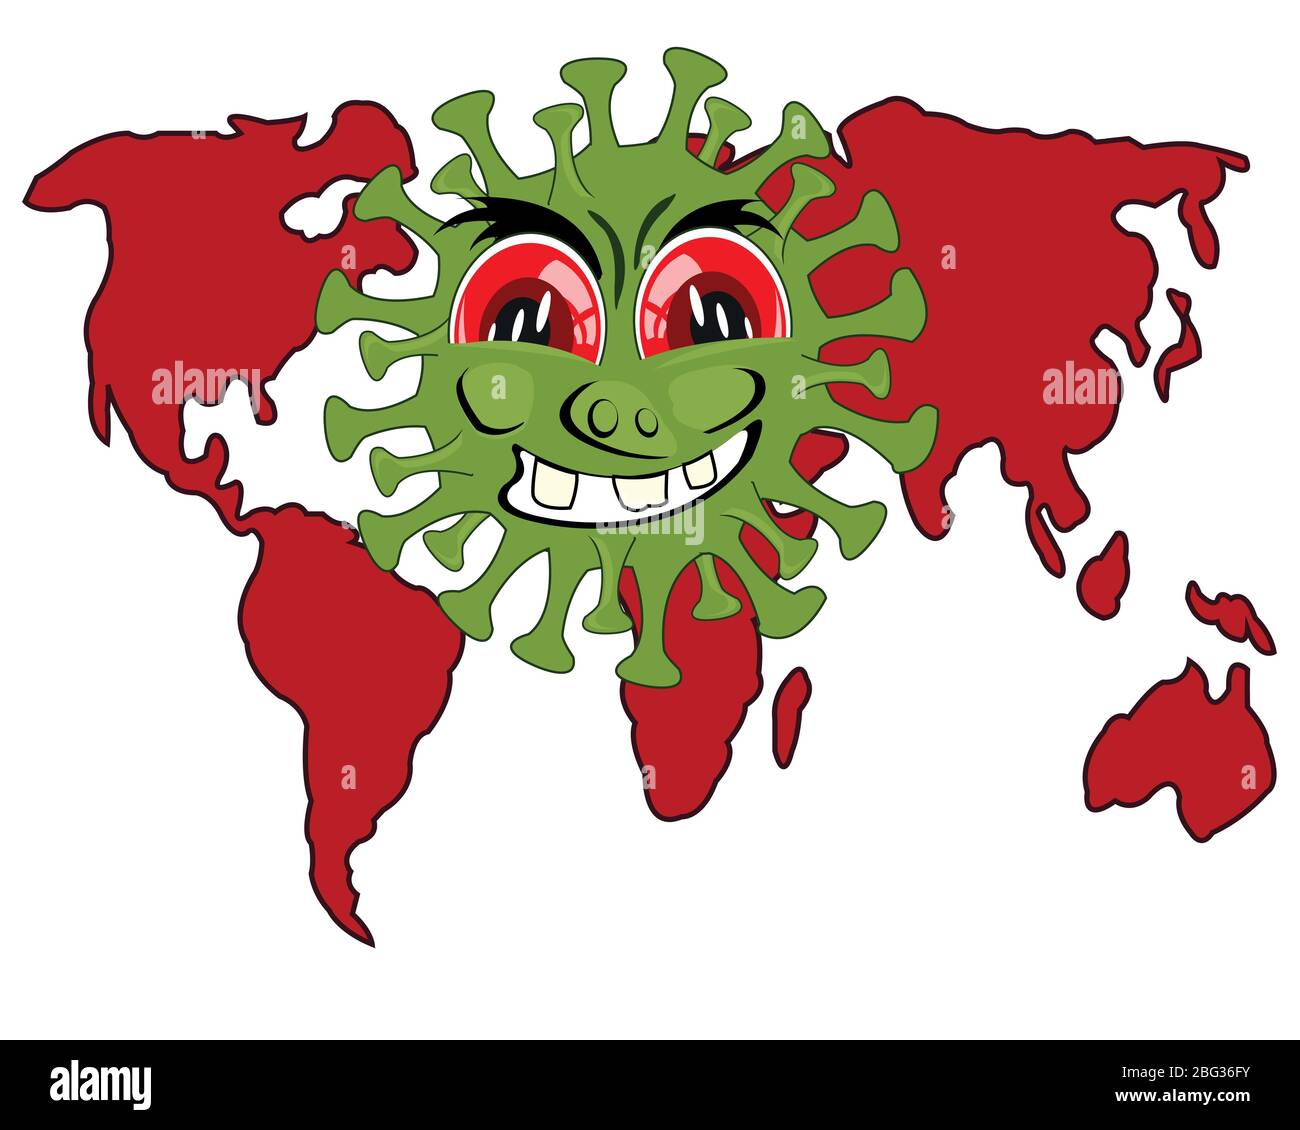 Infektion Coronavirus und Karte der Welt Cartoon Stock Vektor